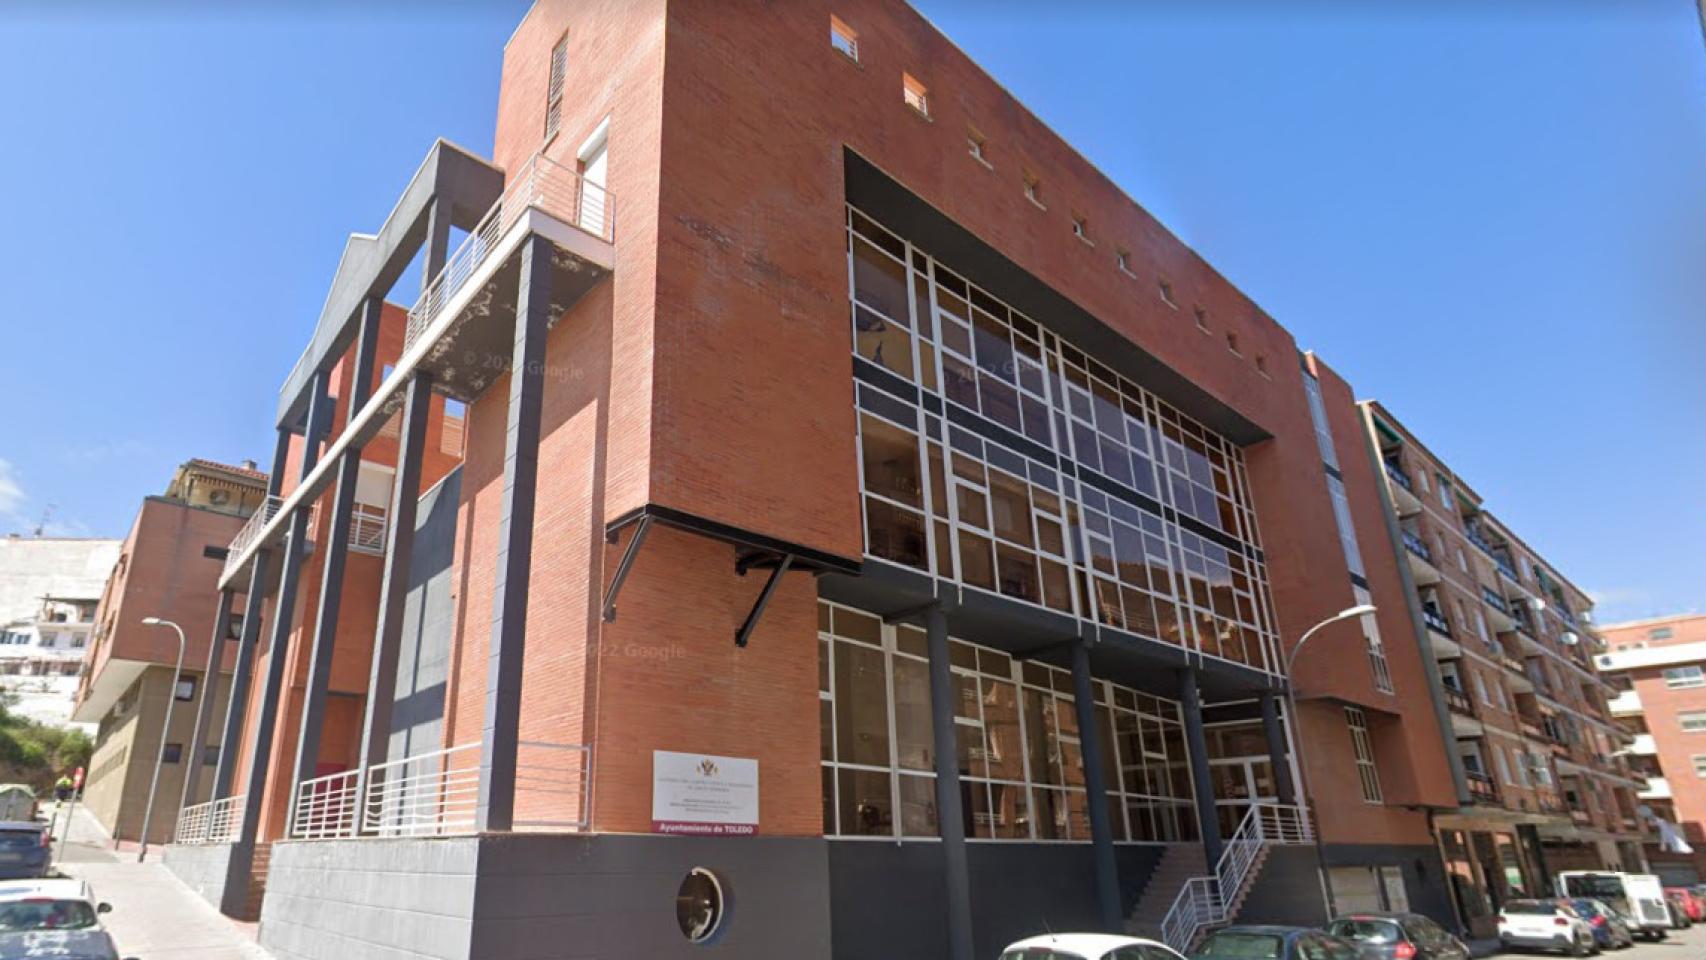 Centro cívico de Santa Bárbara en Toledo. Foto: Google Maps.